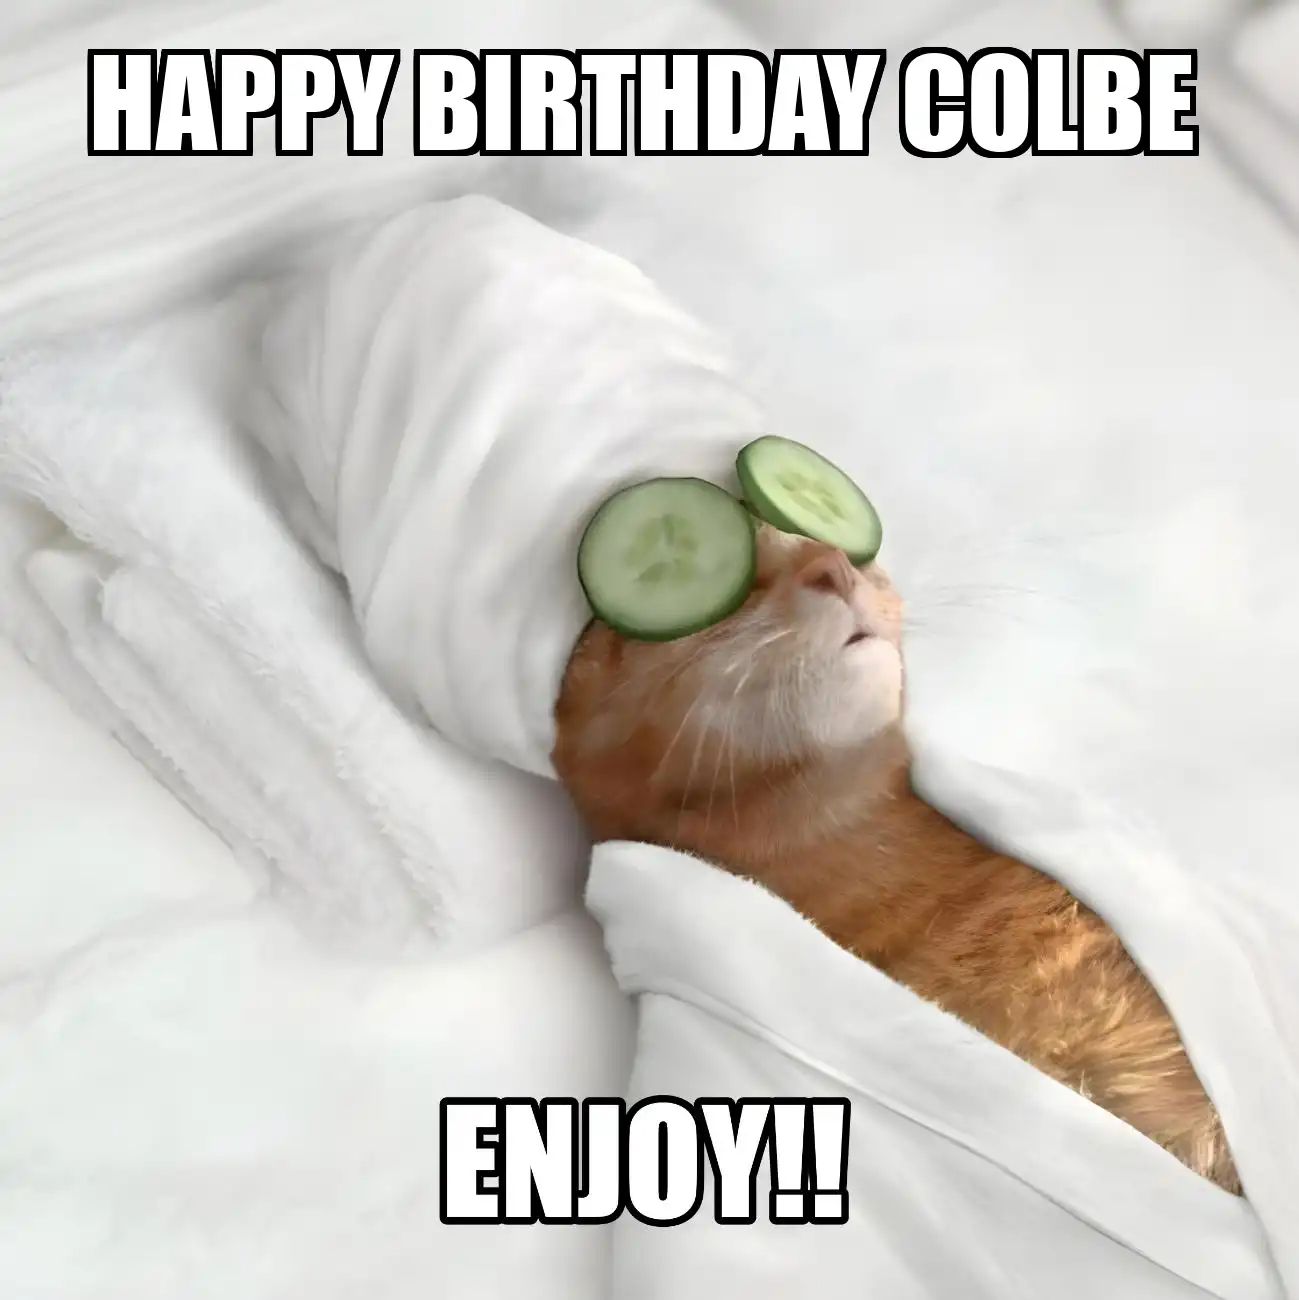 Happy Birthday Colbe Enjoy Cat Meme